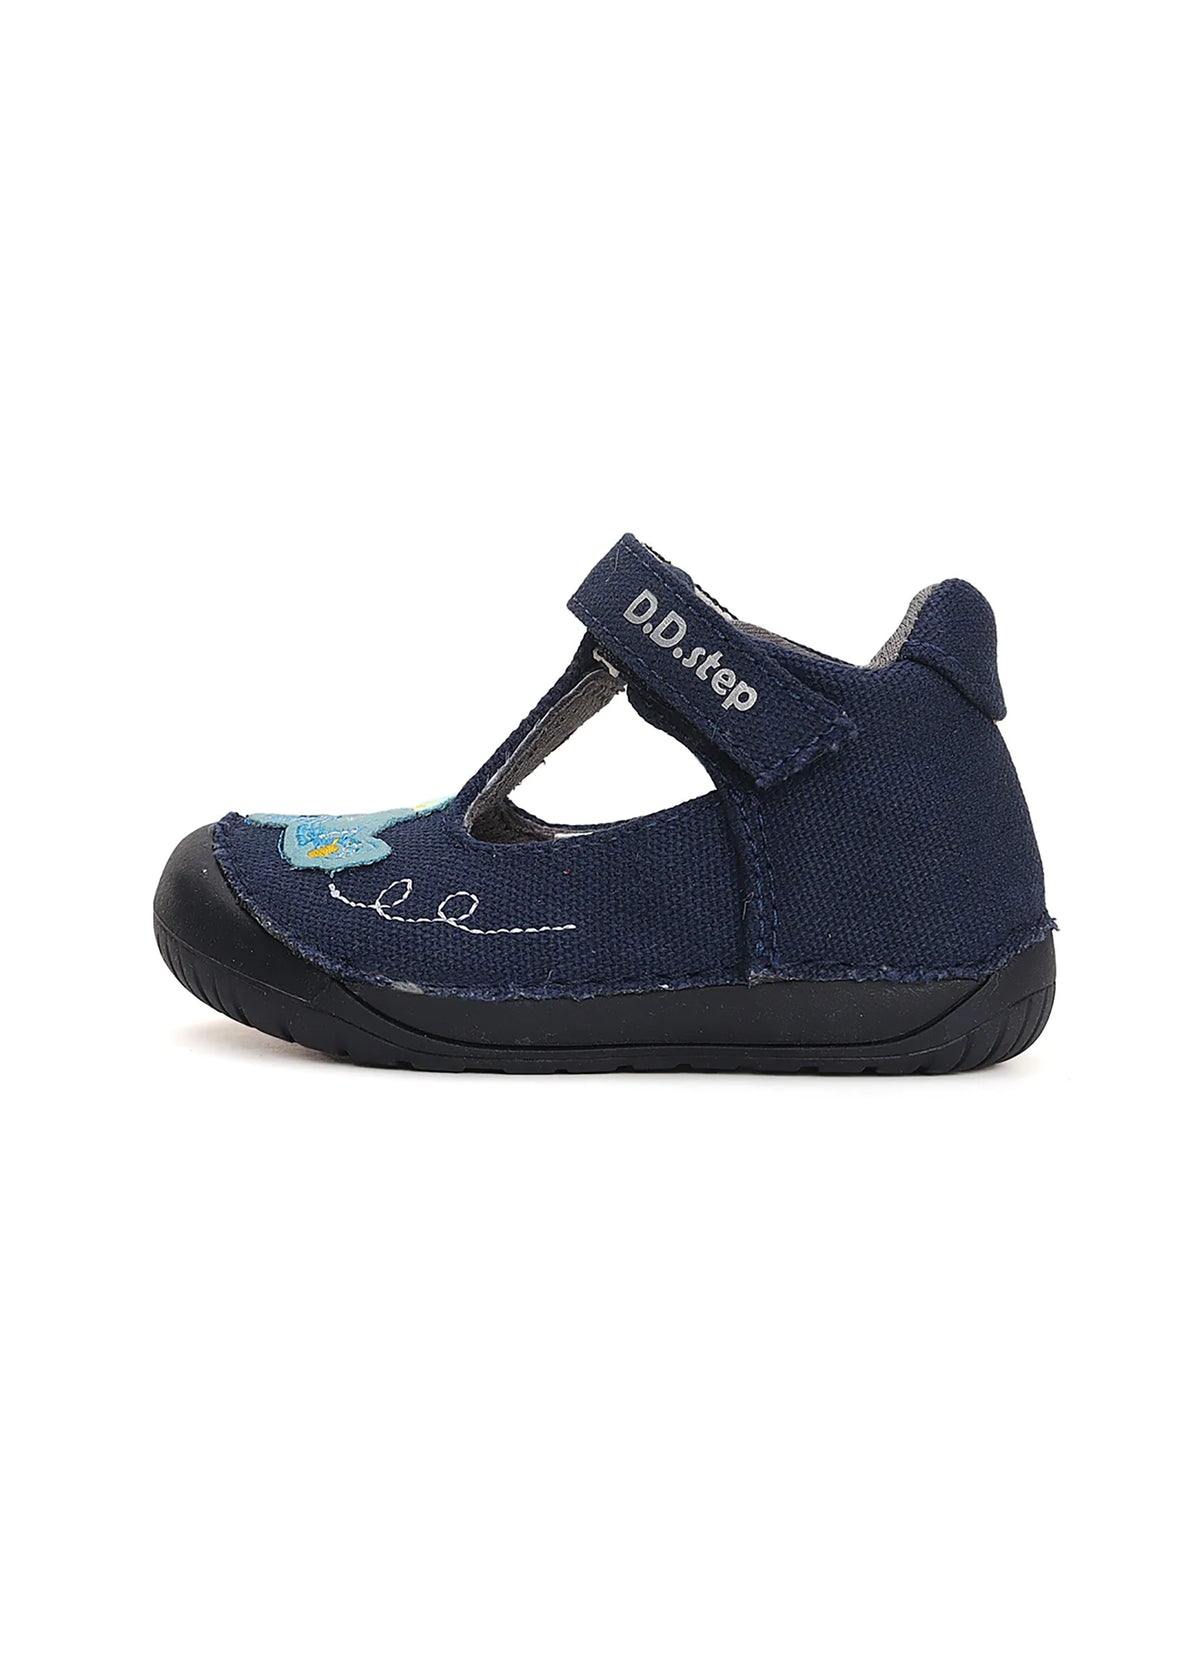 Children's barefoot sandals - dark blue canvas fabric, airplane